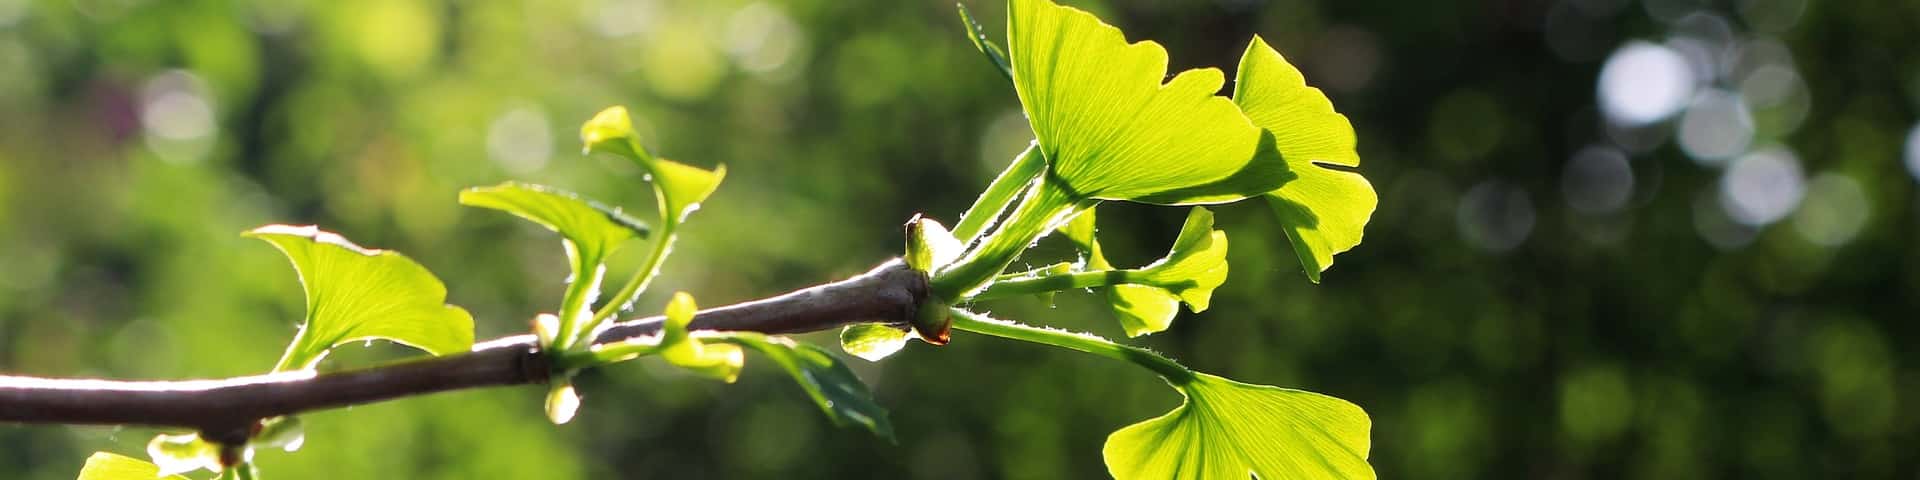 Ginkgo-Blätter vor blauem Himmel von veredelten besonderen Nutzpflanzen-Sorten